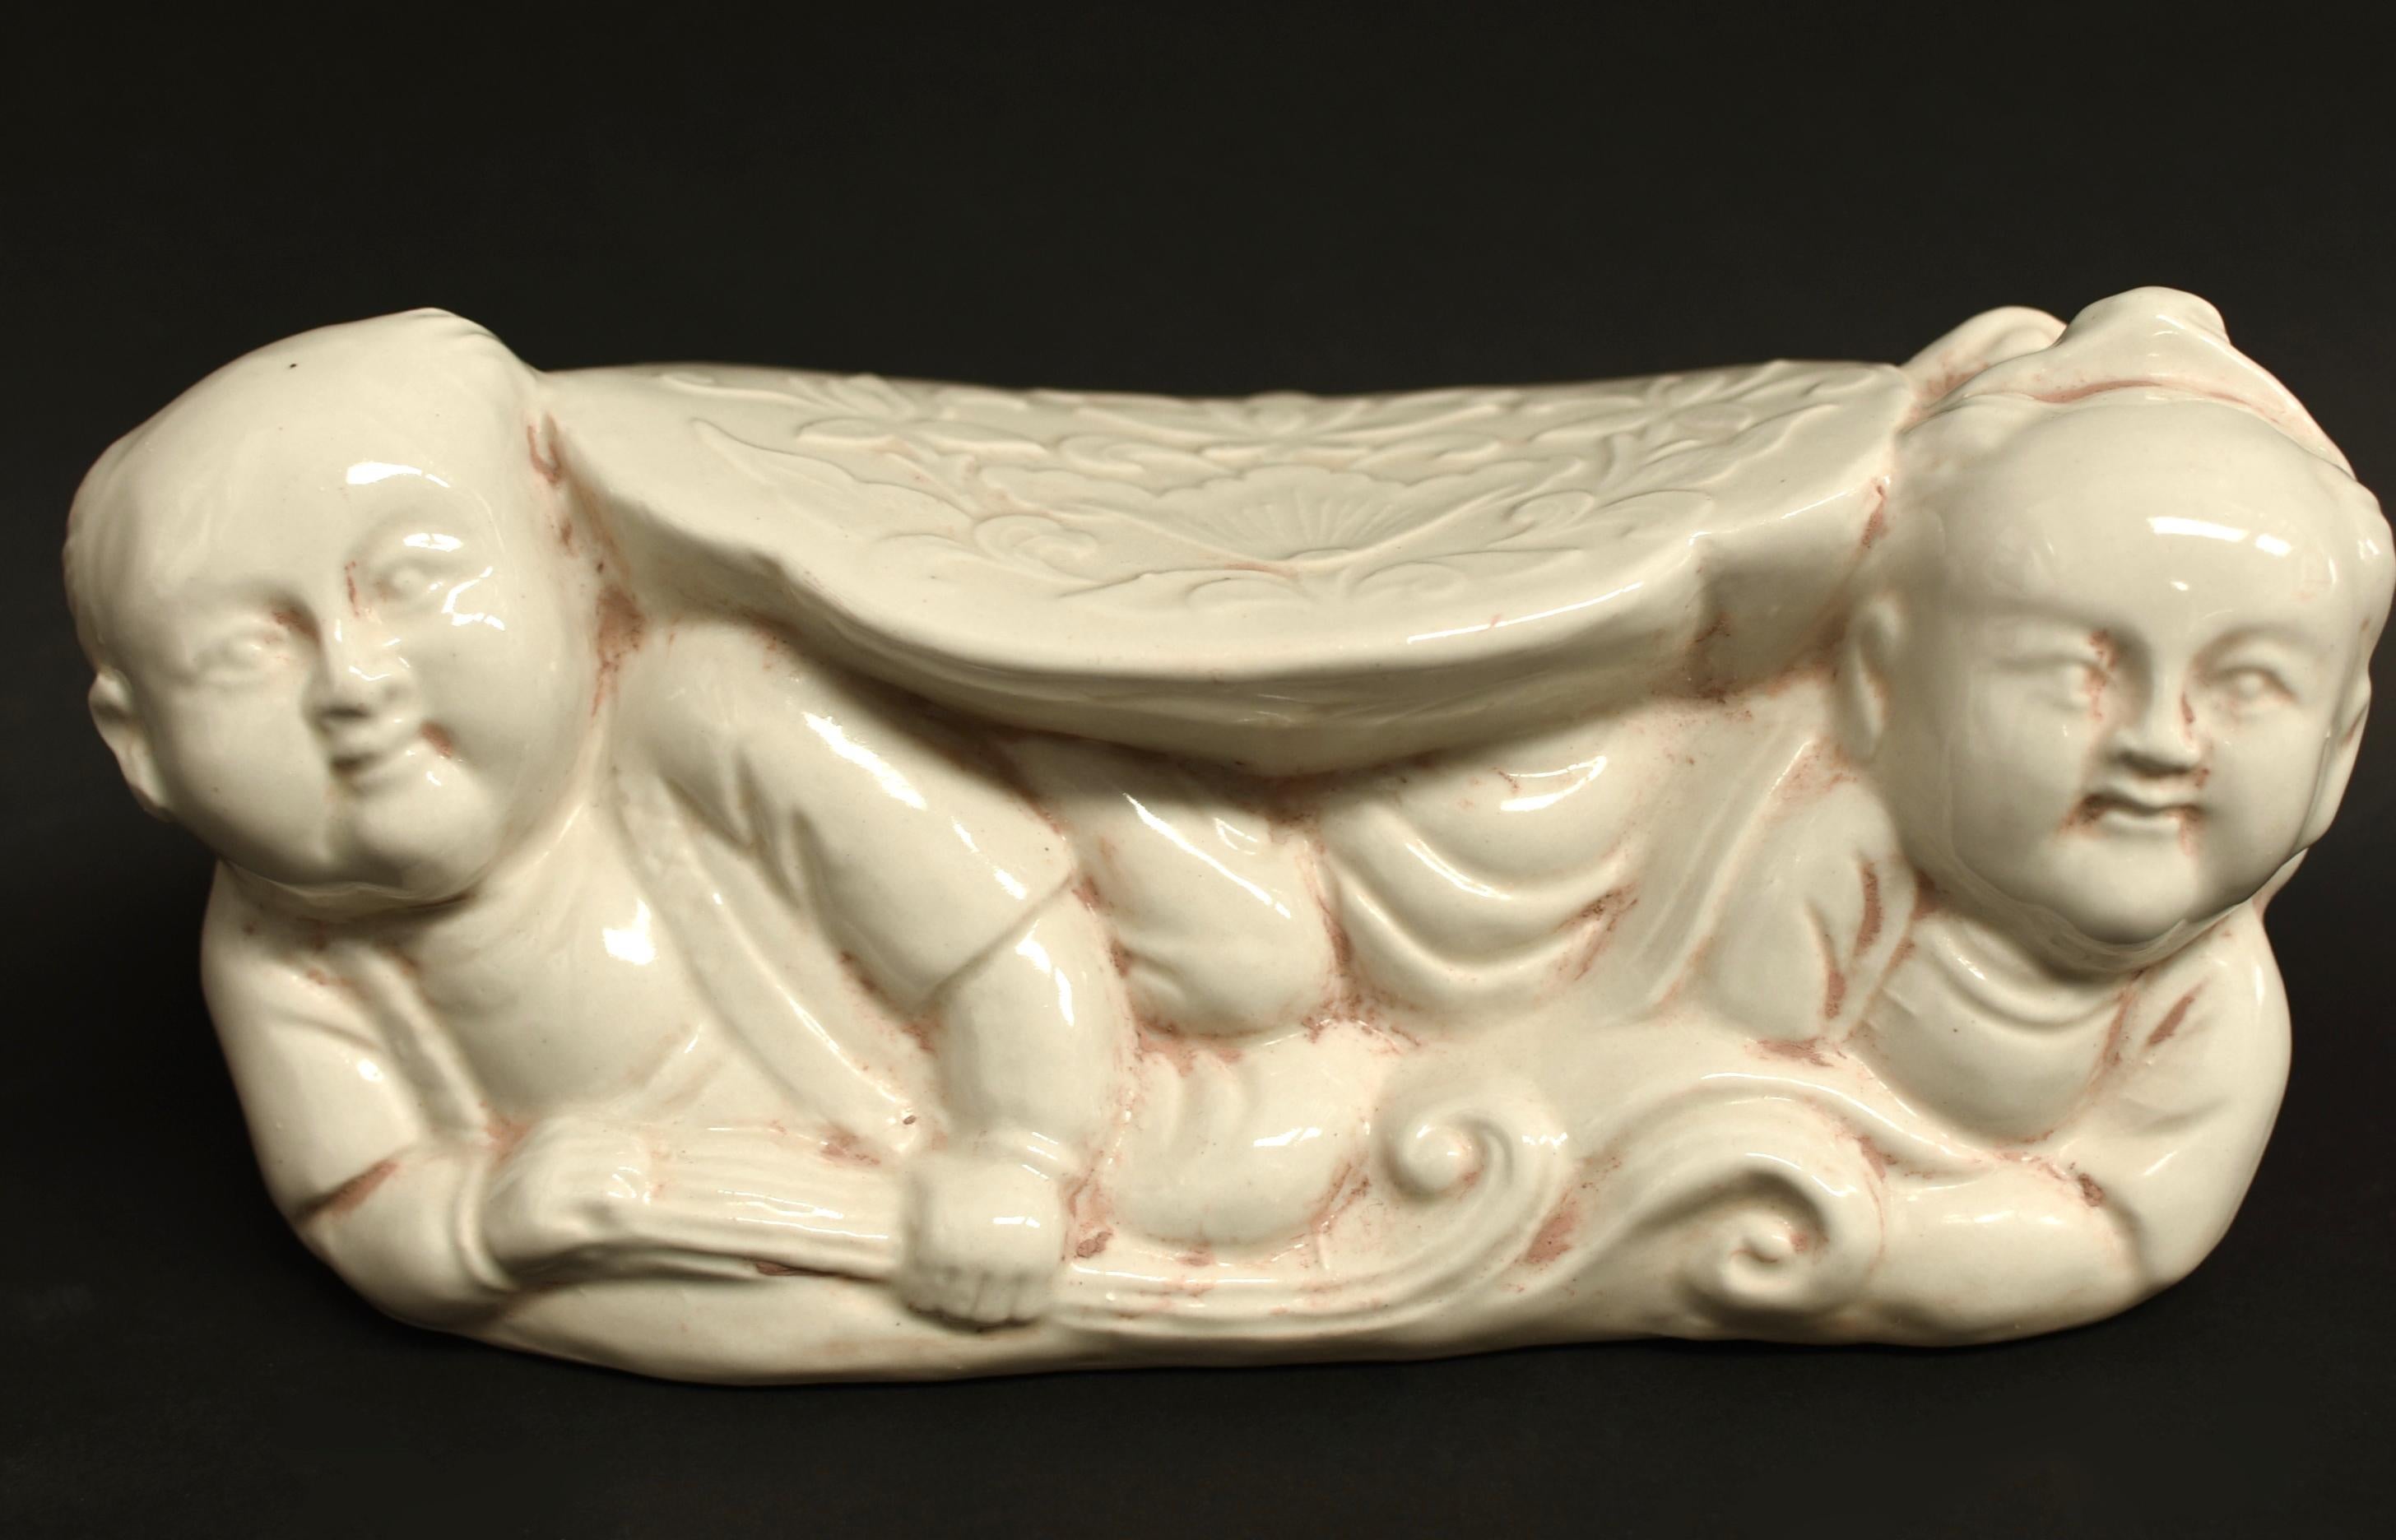 Ein Keramikkissen im Stil der Song-Dynastie aus dem Ding-Brennofen. Der Ding-Ofen ist einer der wichtigsten Brennöfen der Song-Dynastie. Es entstehen milchig weiße oder beige glasierte Stücke, die wegen ihrer Schlichtheit und ländlichen Anmut